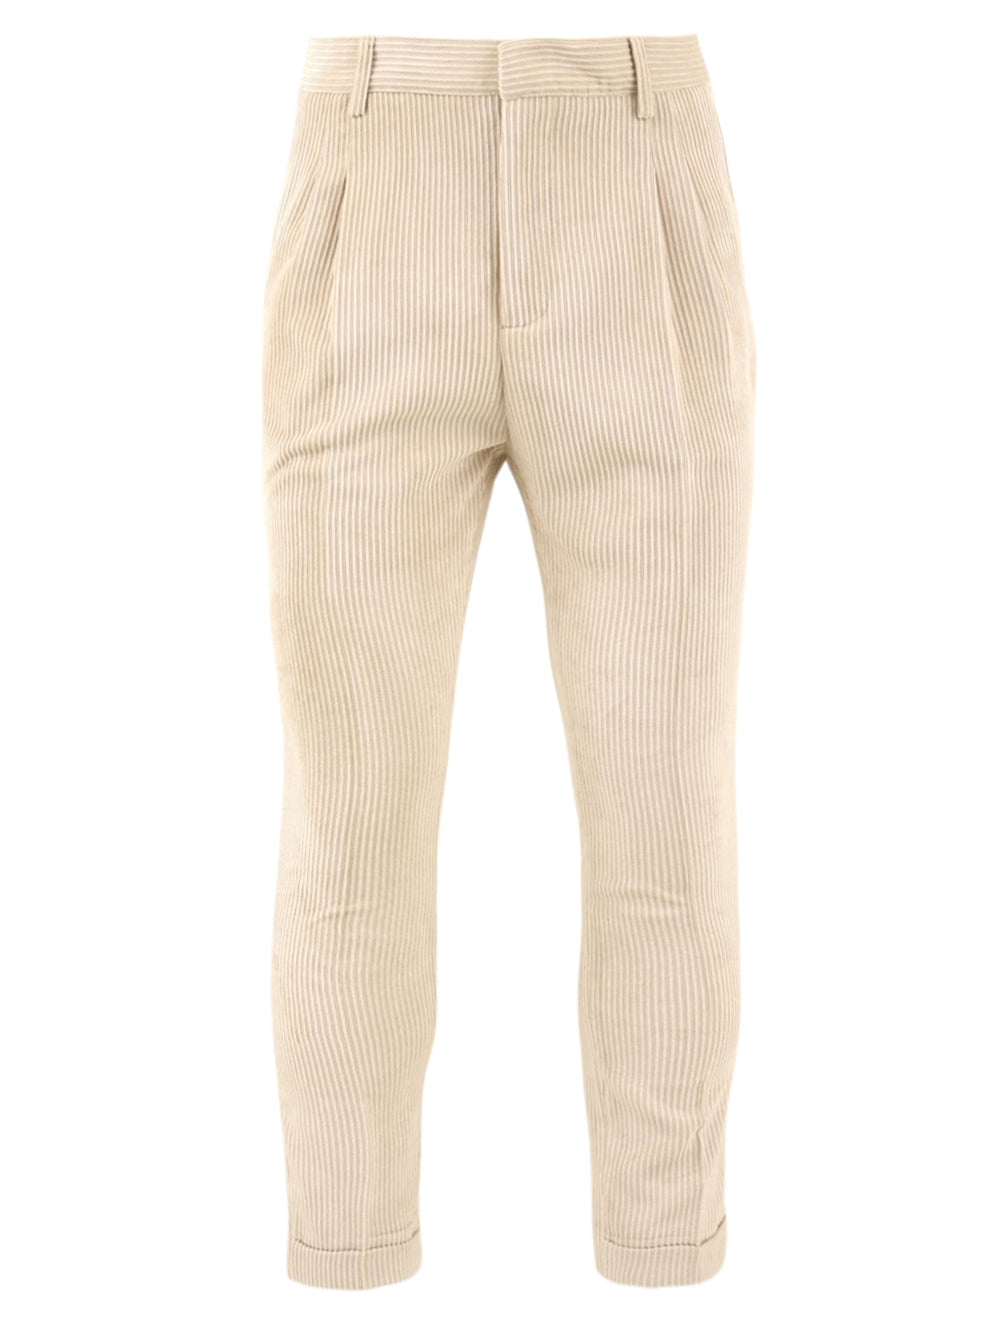 Immagine frontale del pantalone da uomo in velluto beige firmato Daniele Alessandrini con tasche fronte a filo, chiusura con zip e bottone e passante per cintura.